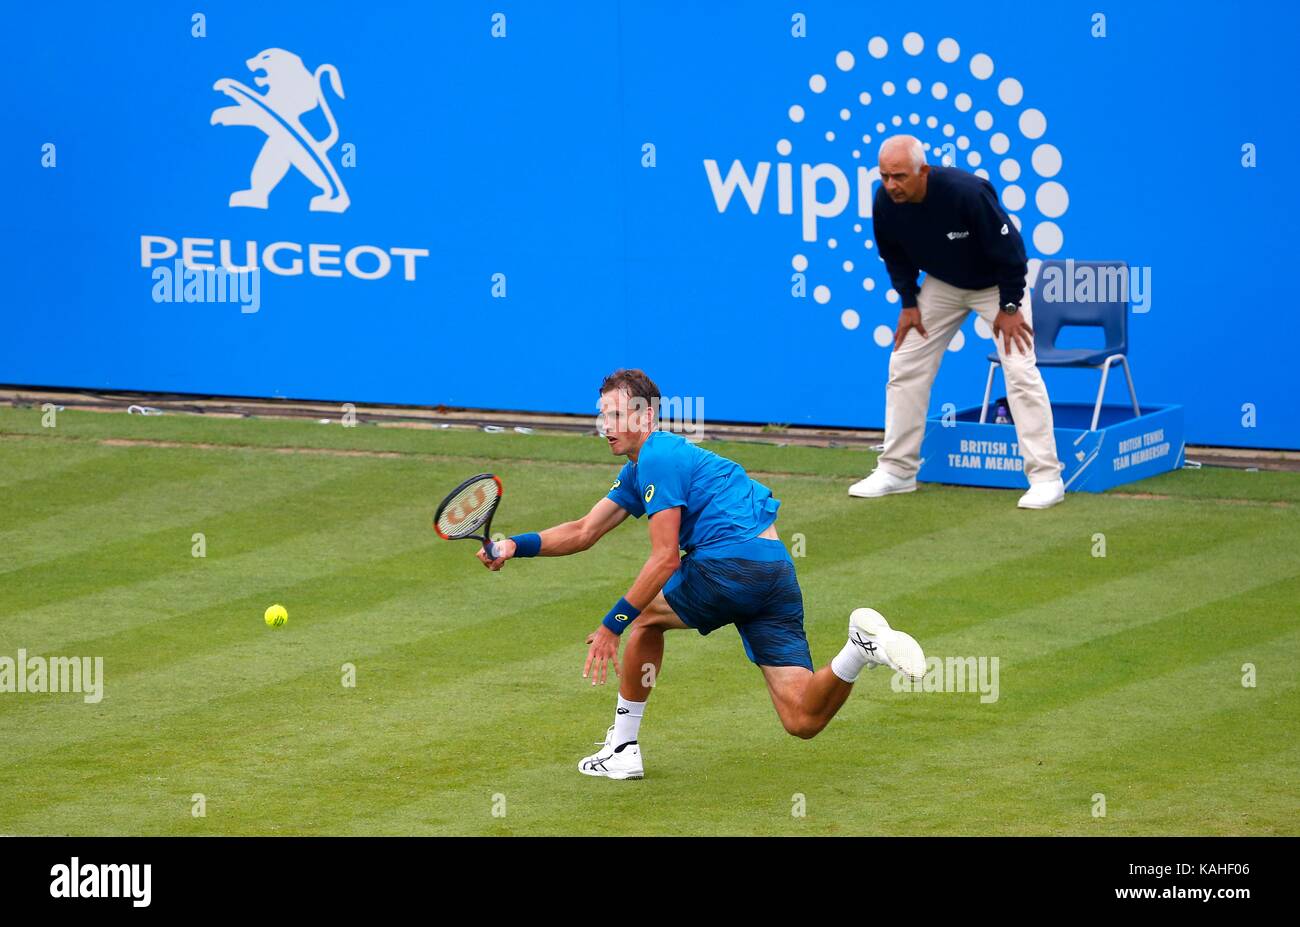 Vasek Pospisil du Canada en action contre Novak Djokovic de Serbie le sixième jour de l'Aegon International au Devonshire Park, Eastbourne. 28 Jun 2017 Banque D'Images